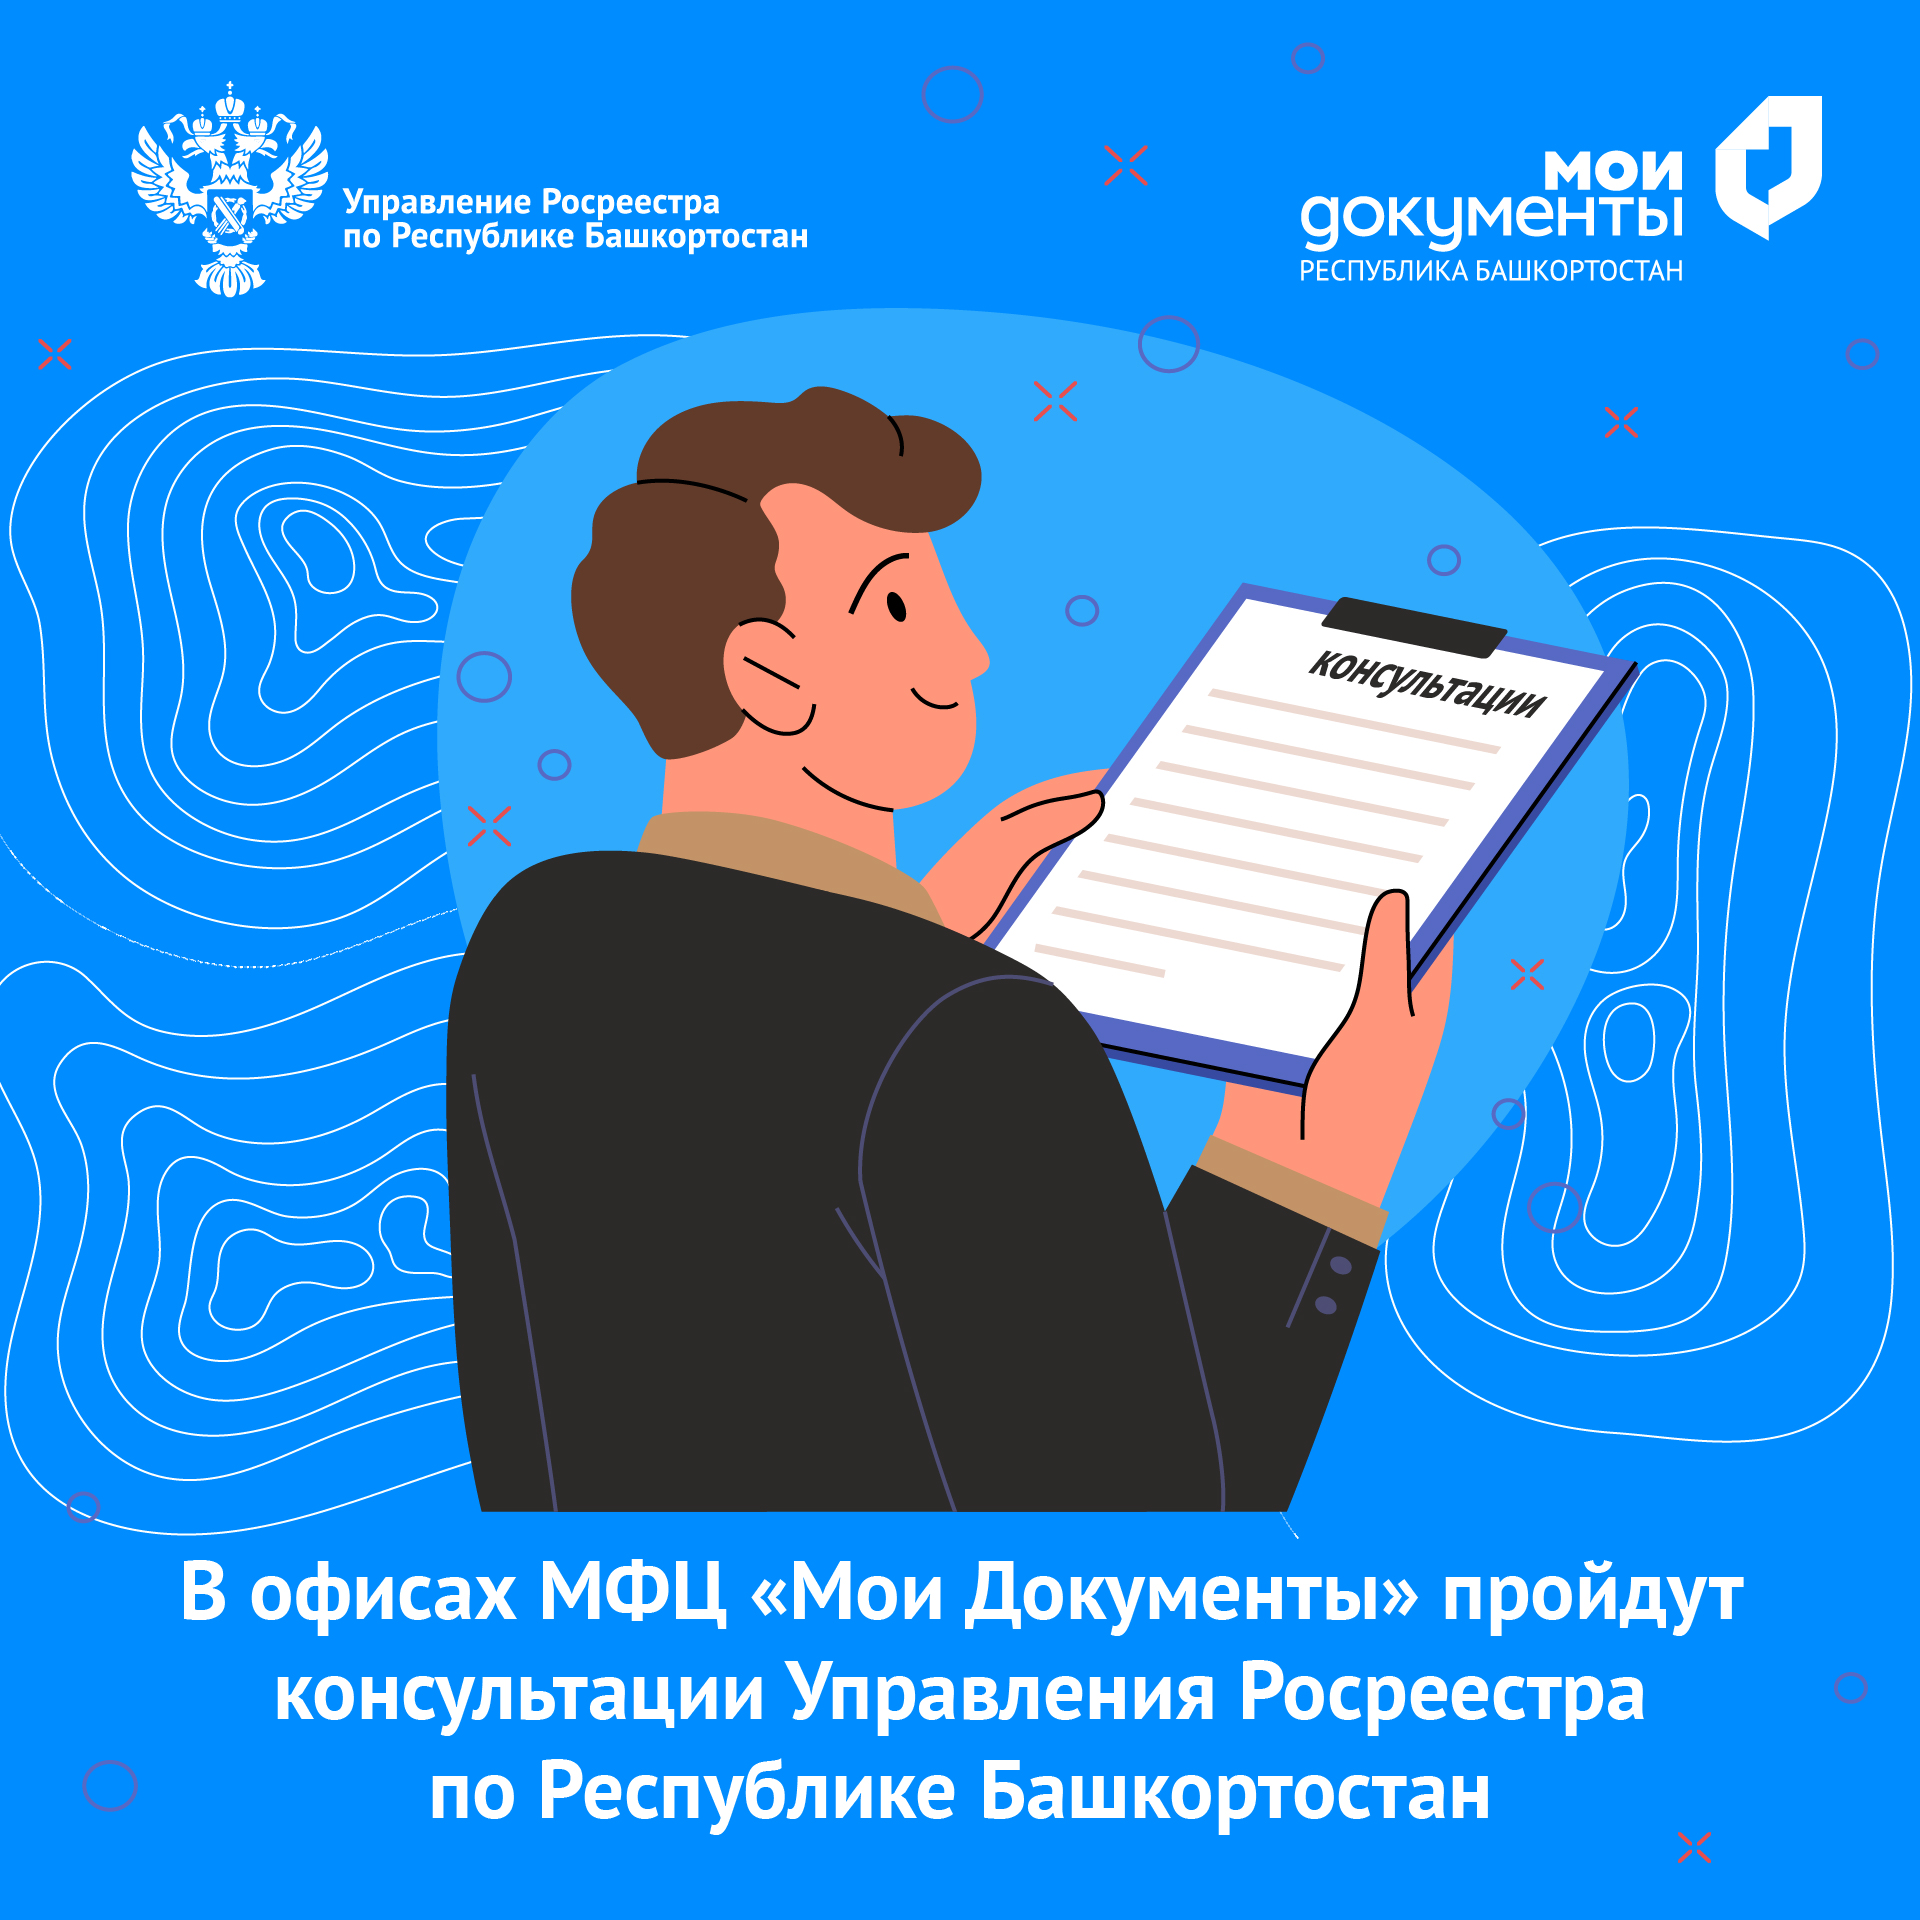 В Башкортостане специалисты Росреестра проведут консультации для граждан и предпринимателей в офисах МФЦ